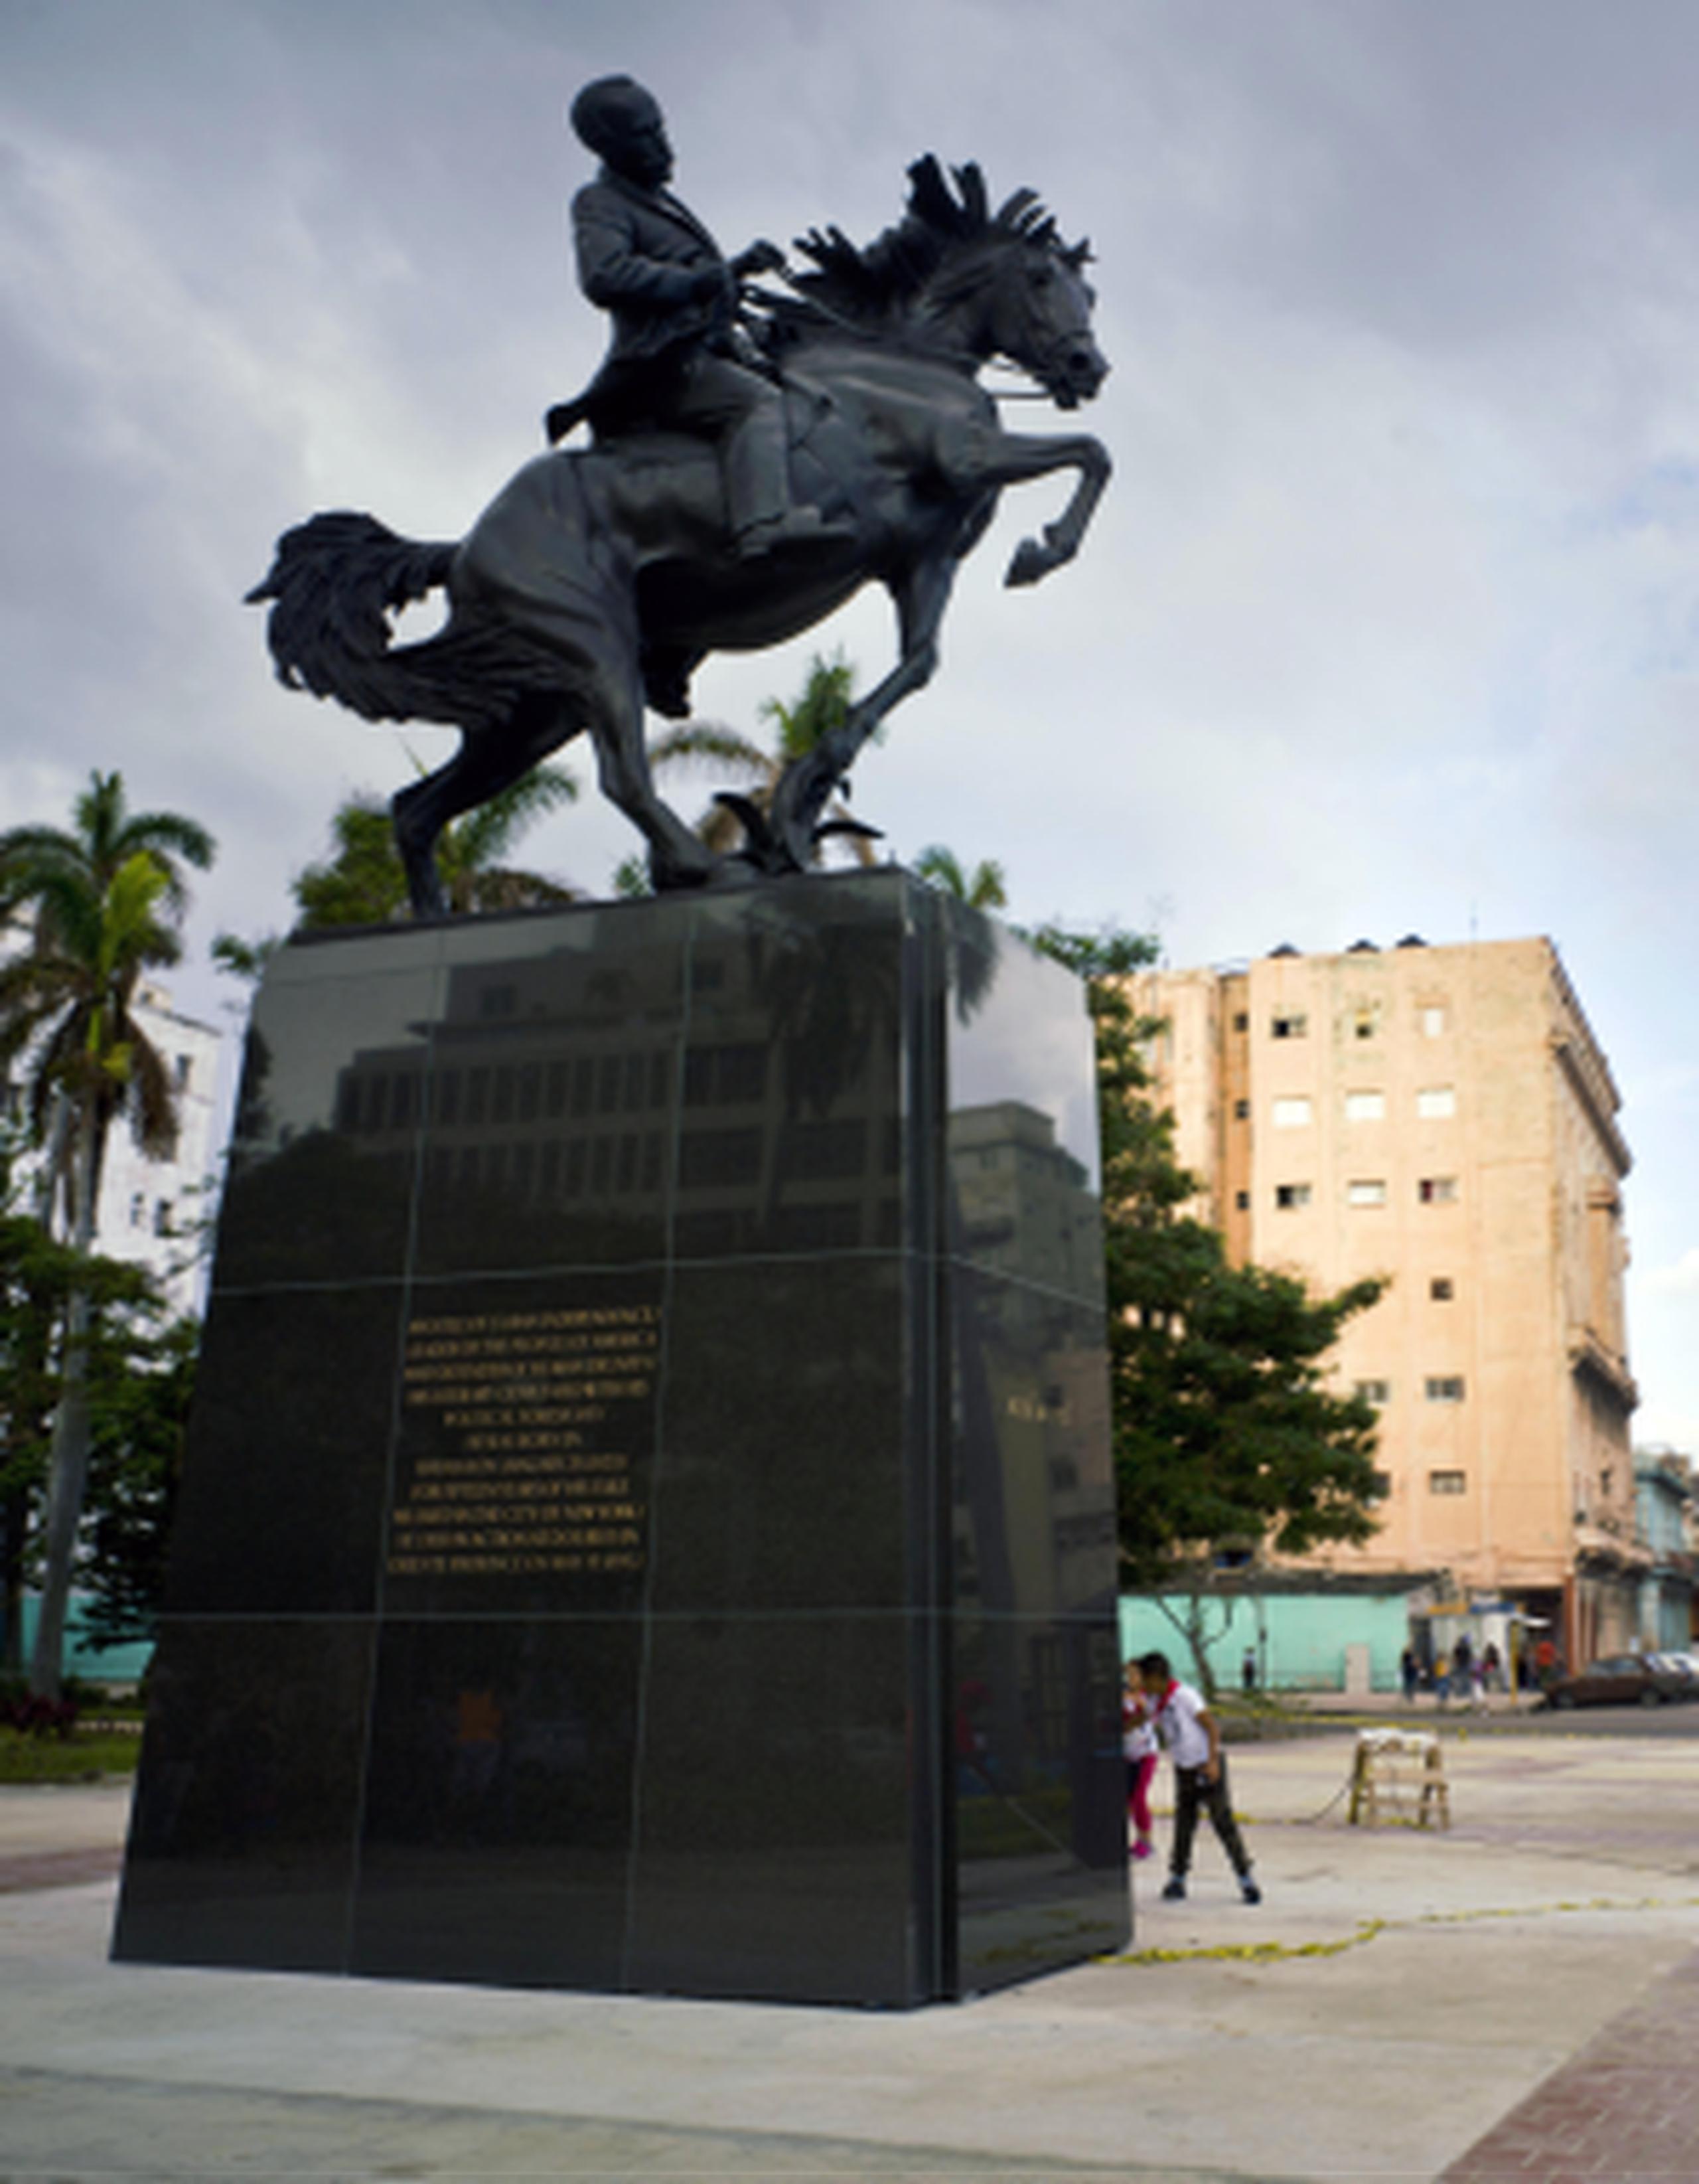 Un grupo de estudiantes observa la estatua de José Martí recién develada en La Habana, y que es una réplica de la existente en el Parque Central de Nueva York. (AP/Ramon Espinosa)